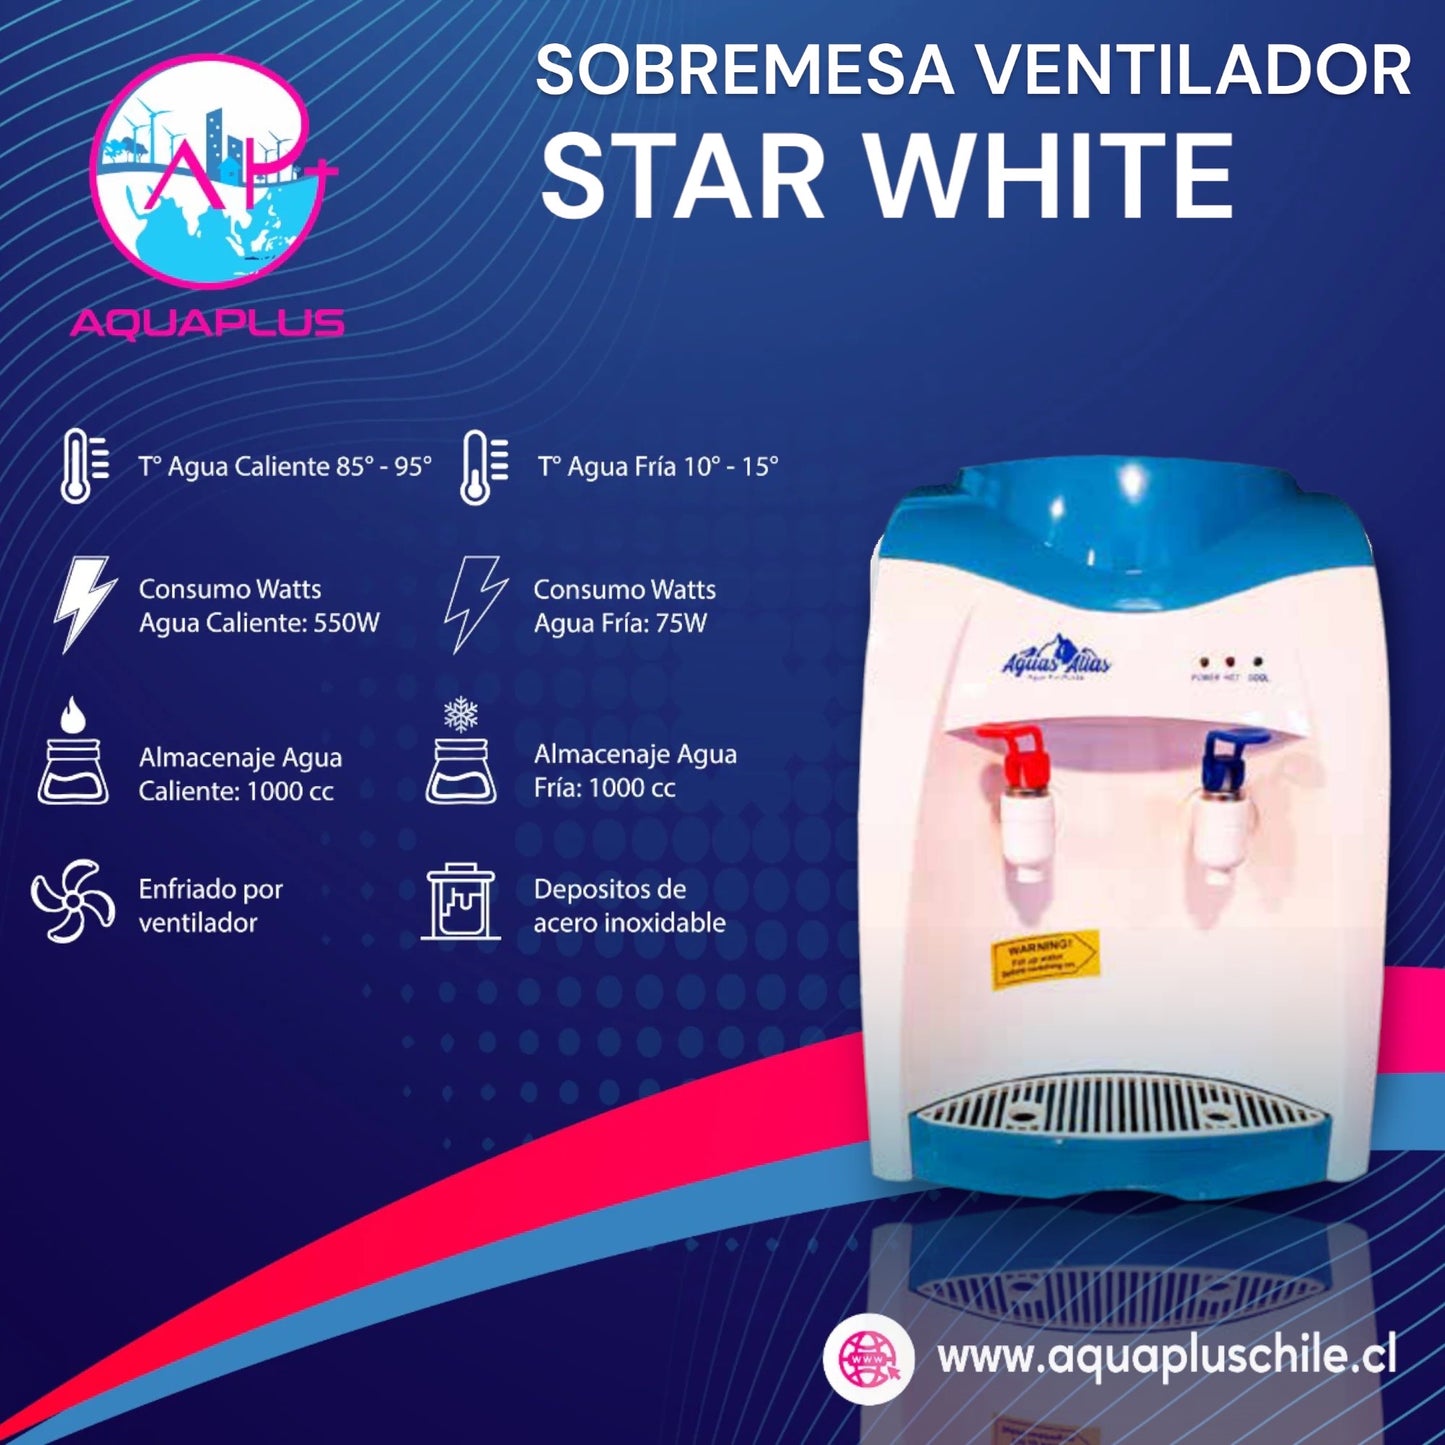 SOBREMESA VENTILADOR STAR WHITE + 4 BIDONES (incluye envases retonable)